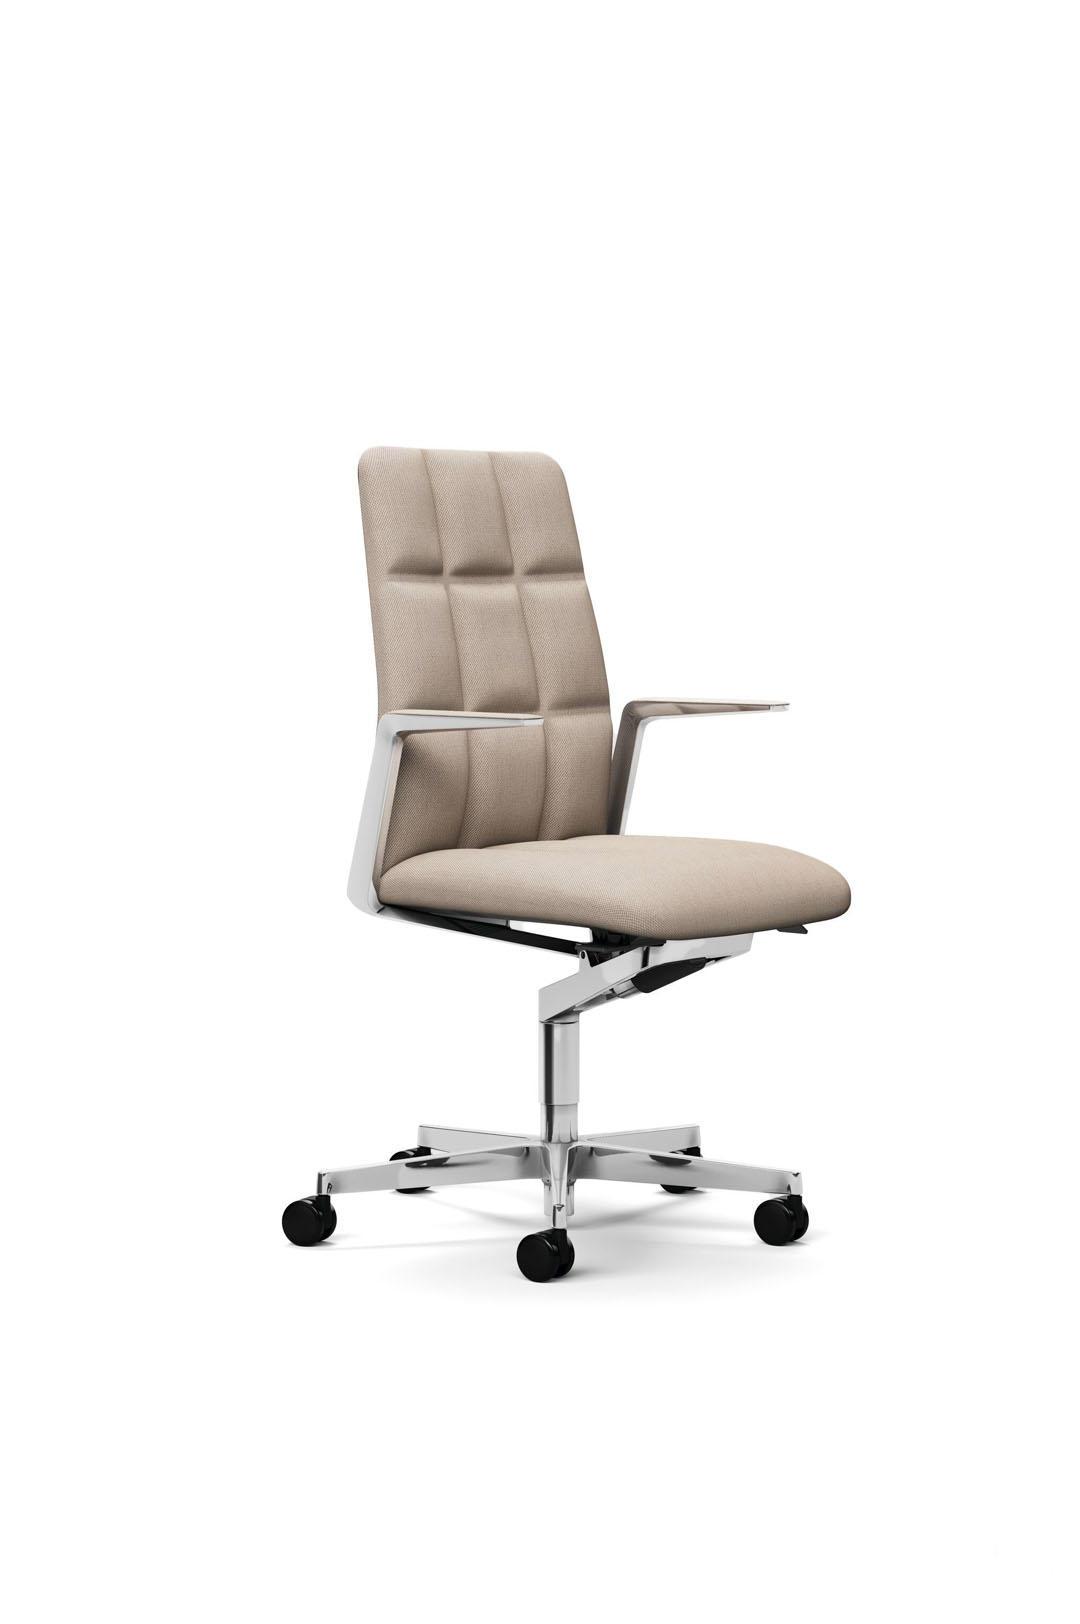 Офисное кресло Leadchair Management 2060 от Walter Knoll — Фотография 1